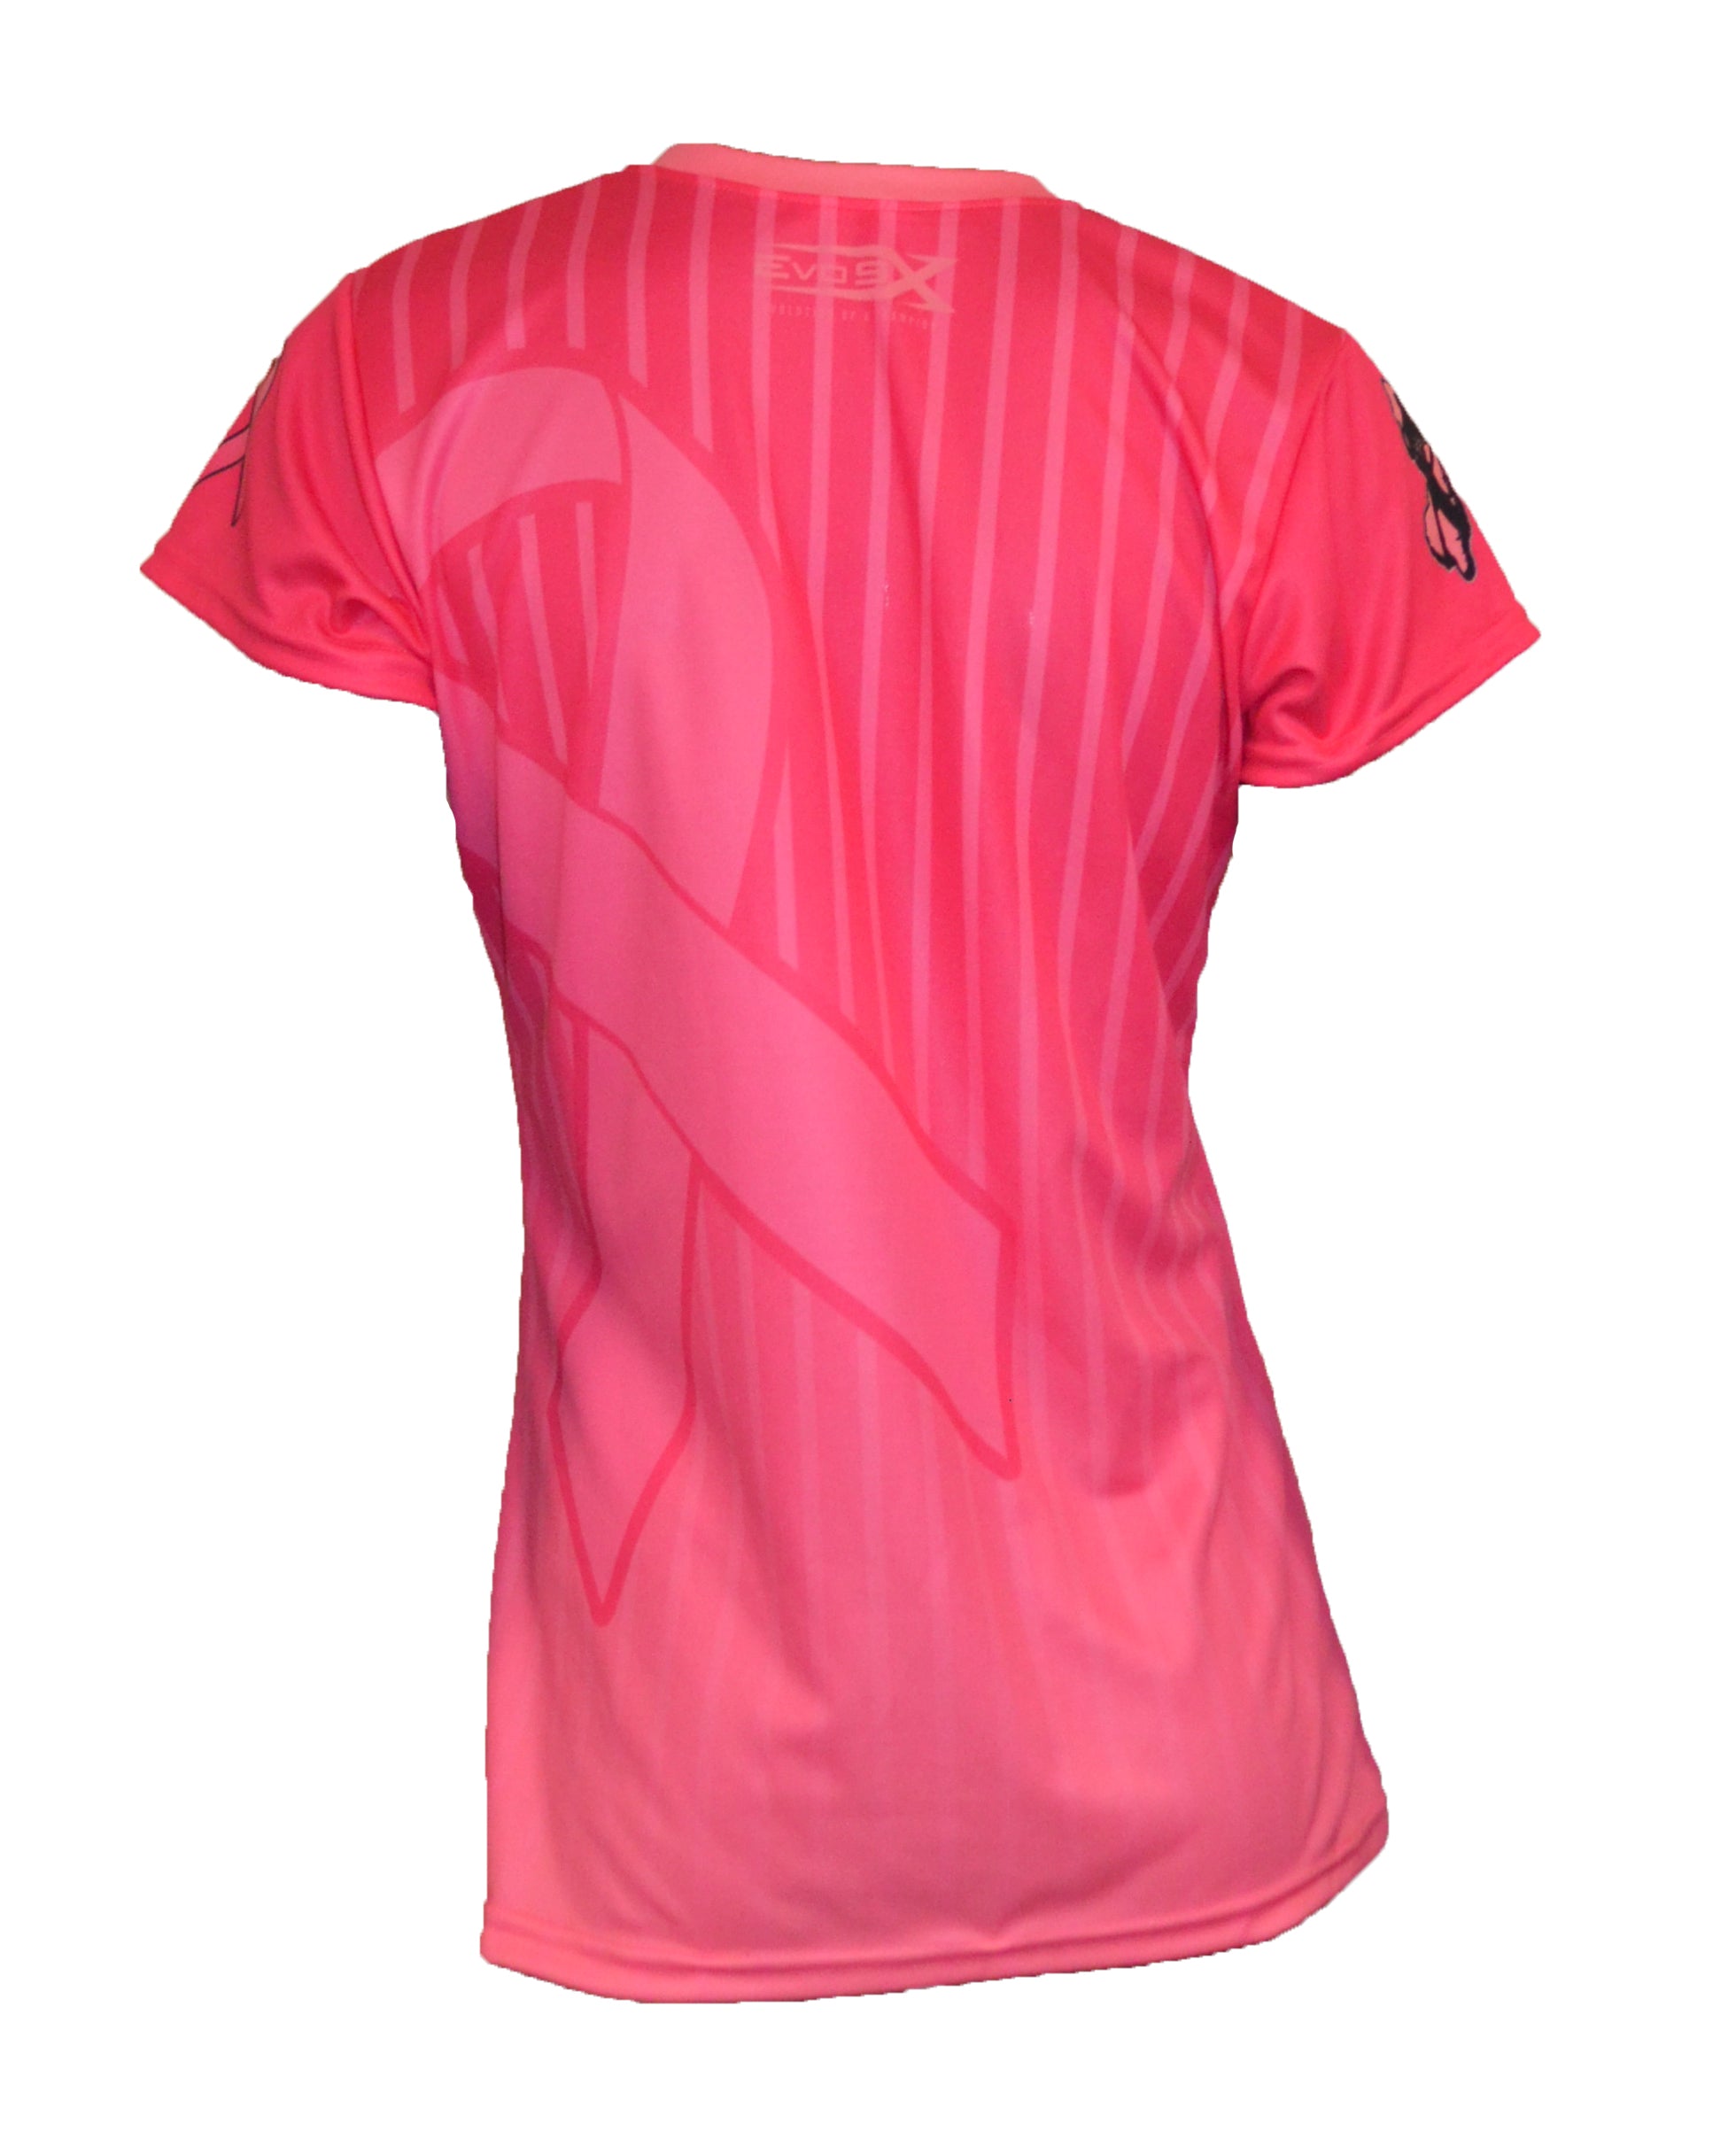 Awareness Shirt Pink Back